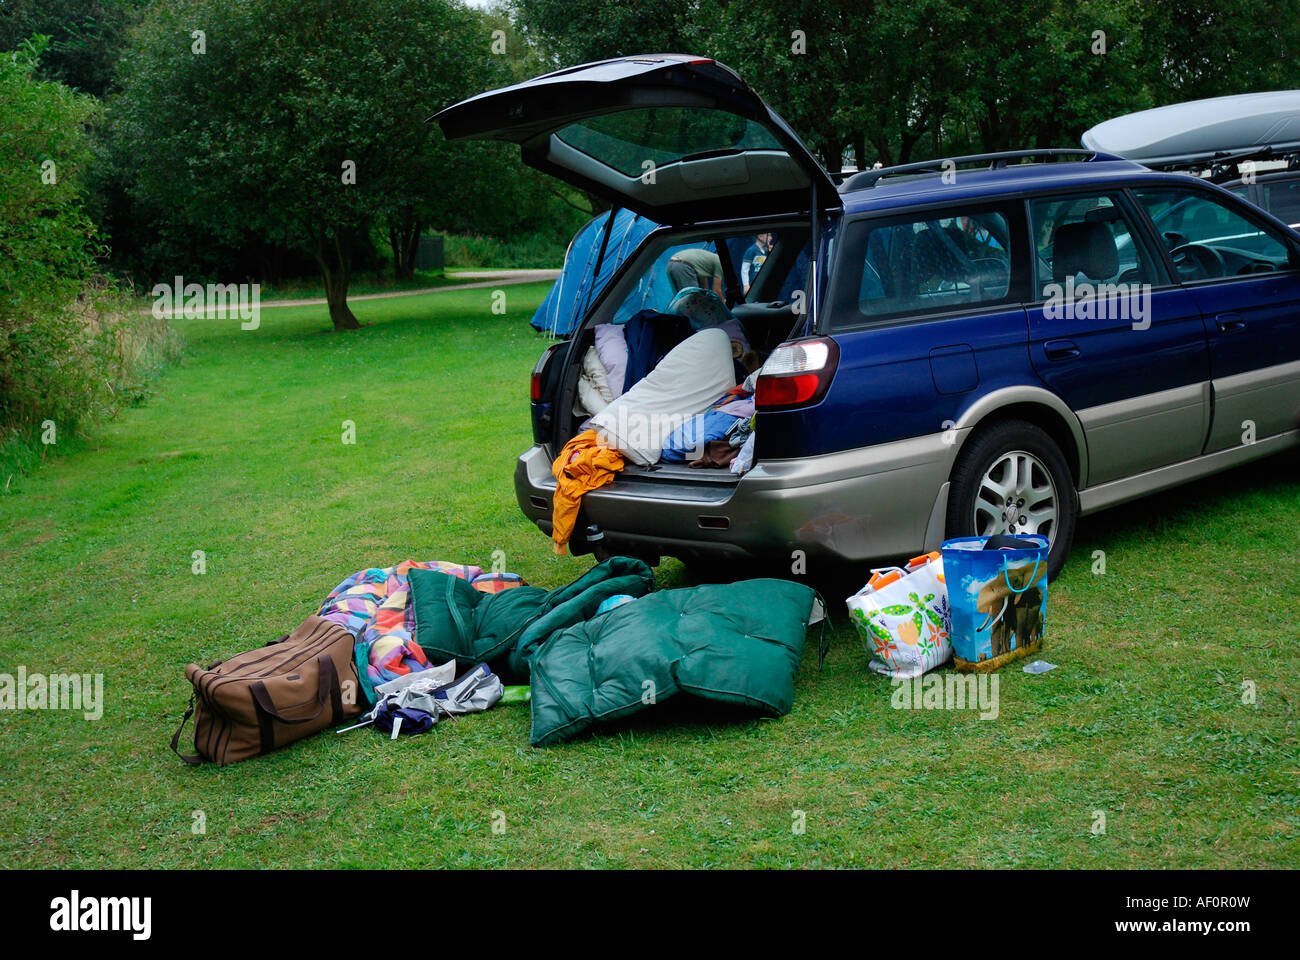 Kofferraum voll mit camping-Ausrüstung Stockfotografie - Alamy